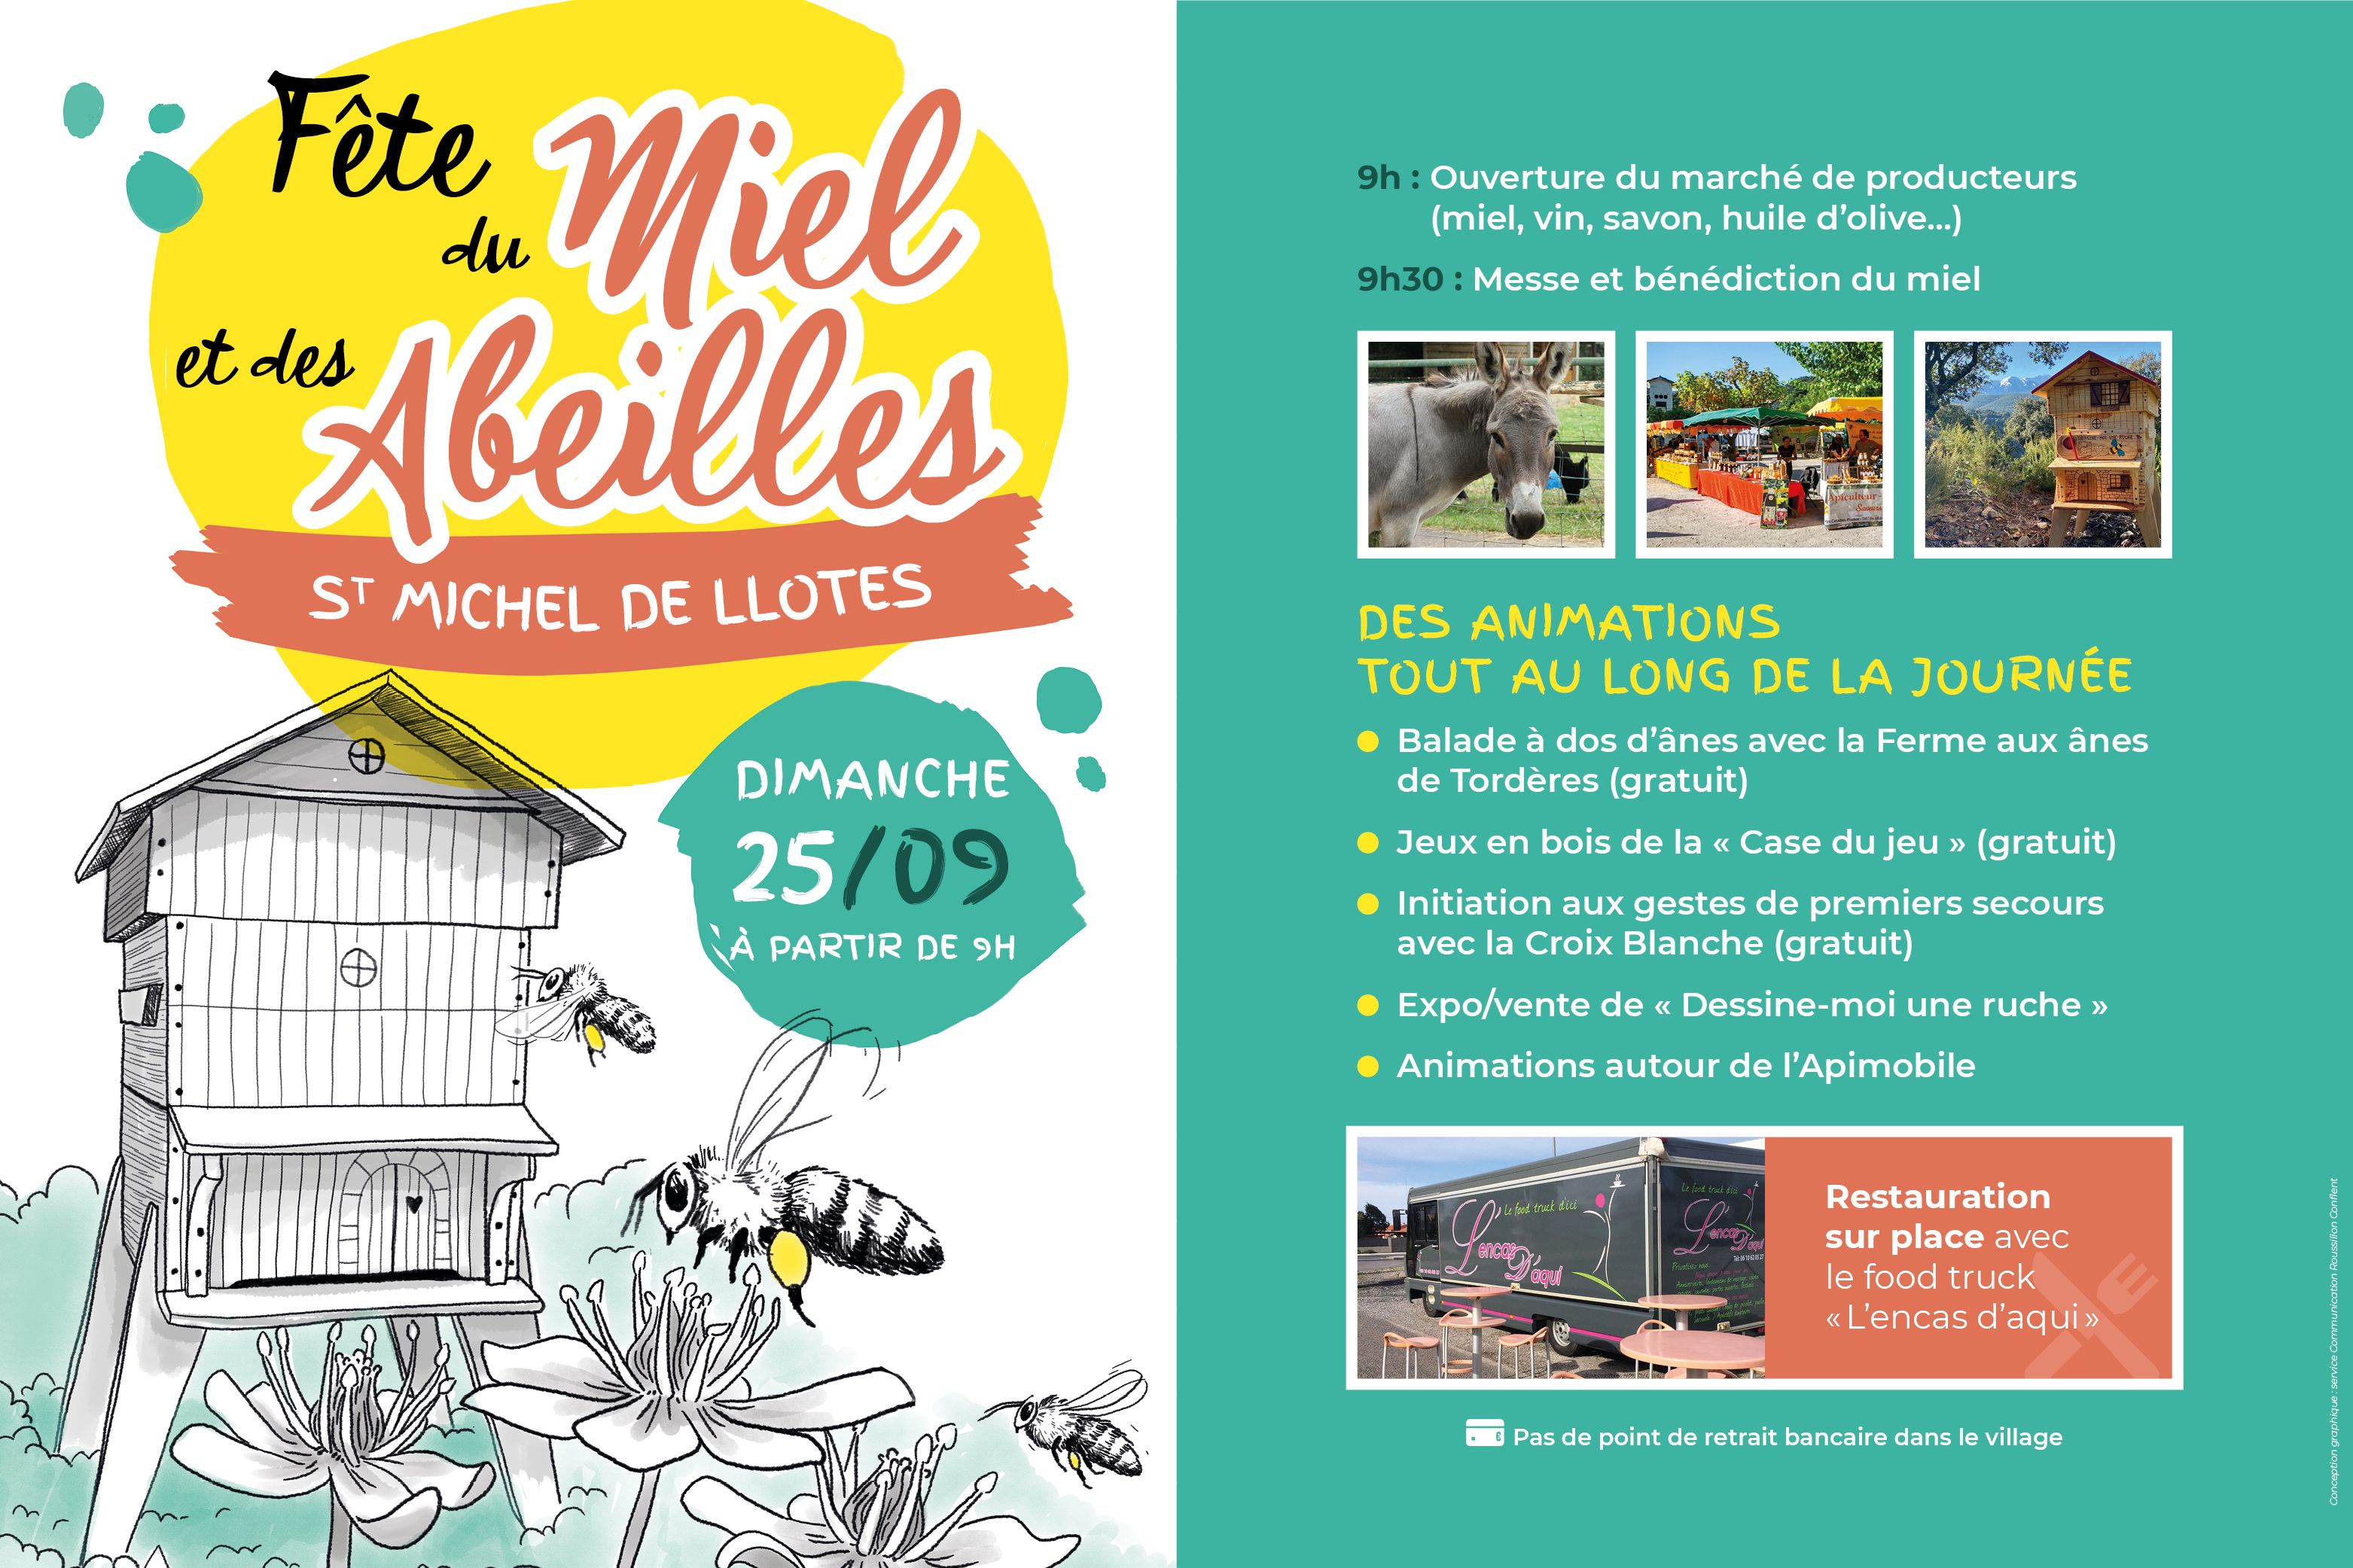 Fête du miel et des abeilles de Saint Michel de Llotes à partir de 9H le dimanche 25 septembre 2022, venez découvrir notre marché de producteur ainsi que les animaux présents sur place